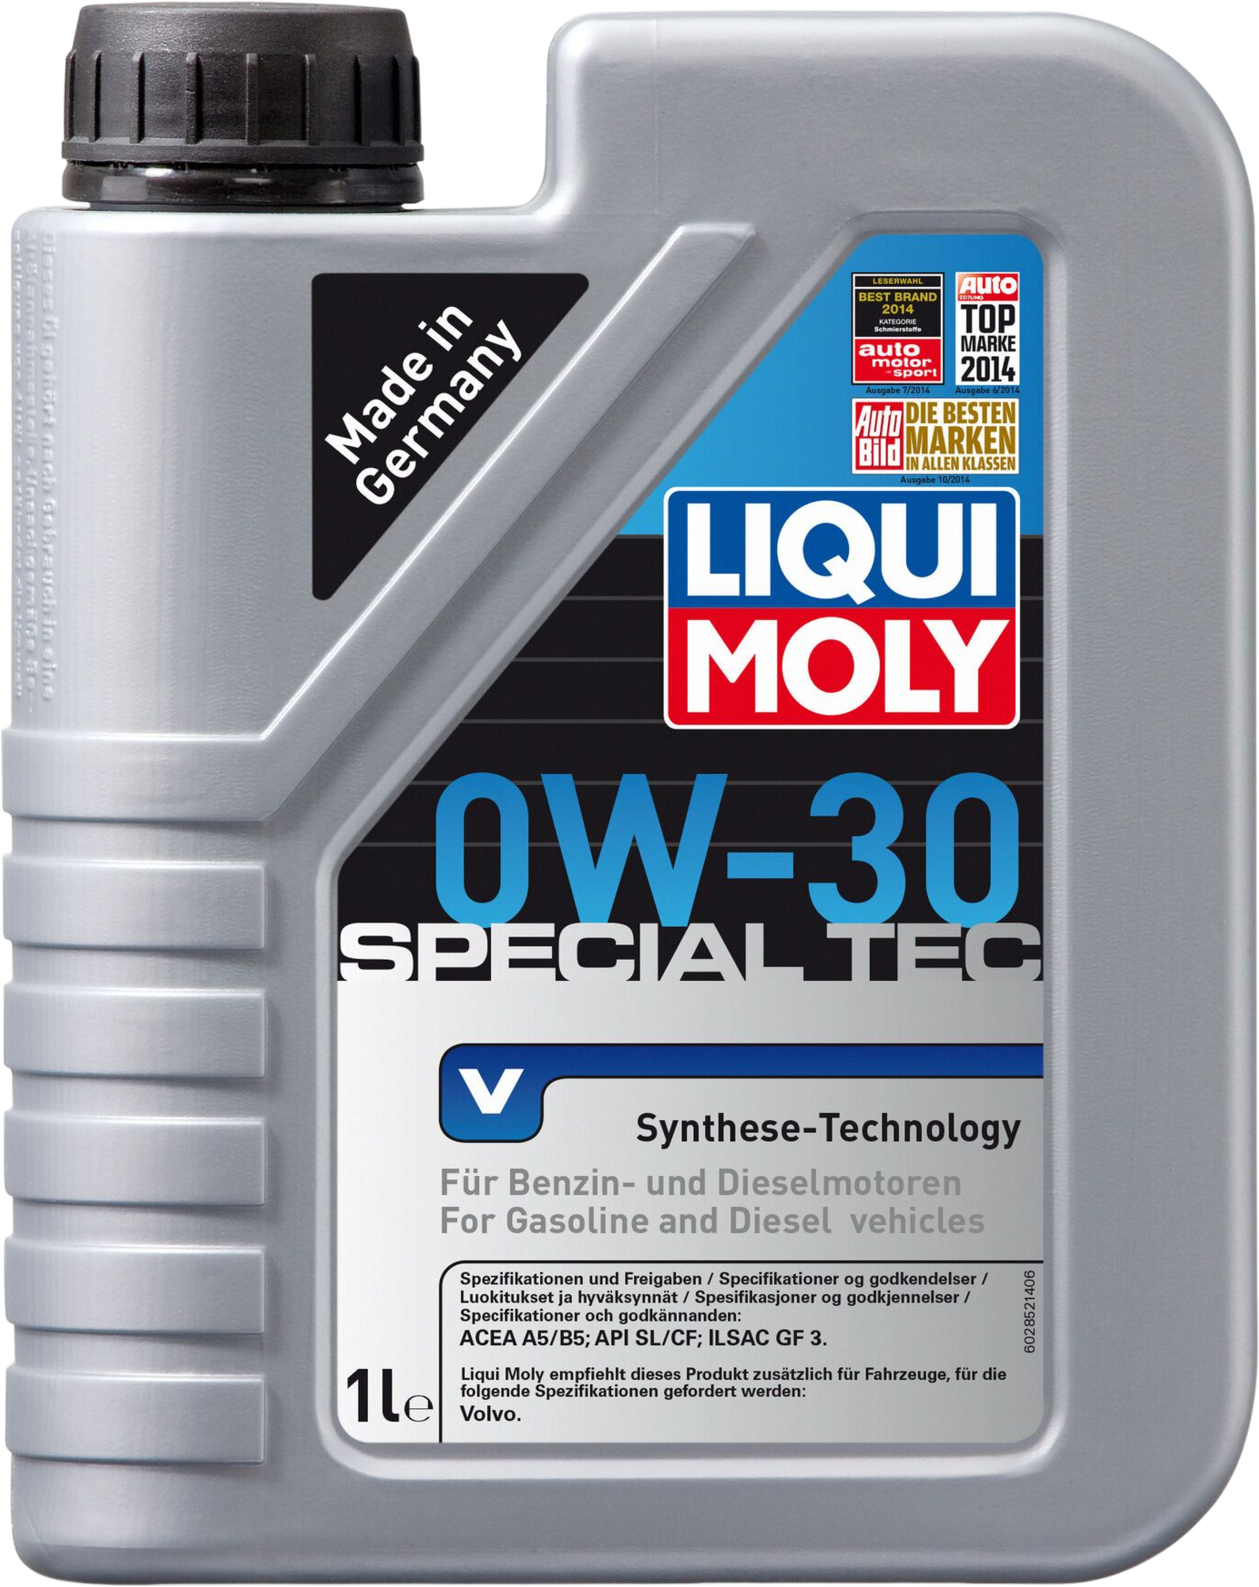 Liqui Moly Special Tec V 0W-30, 1 lt